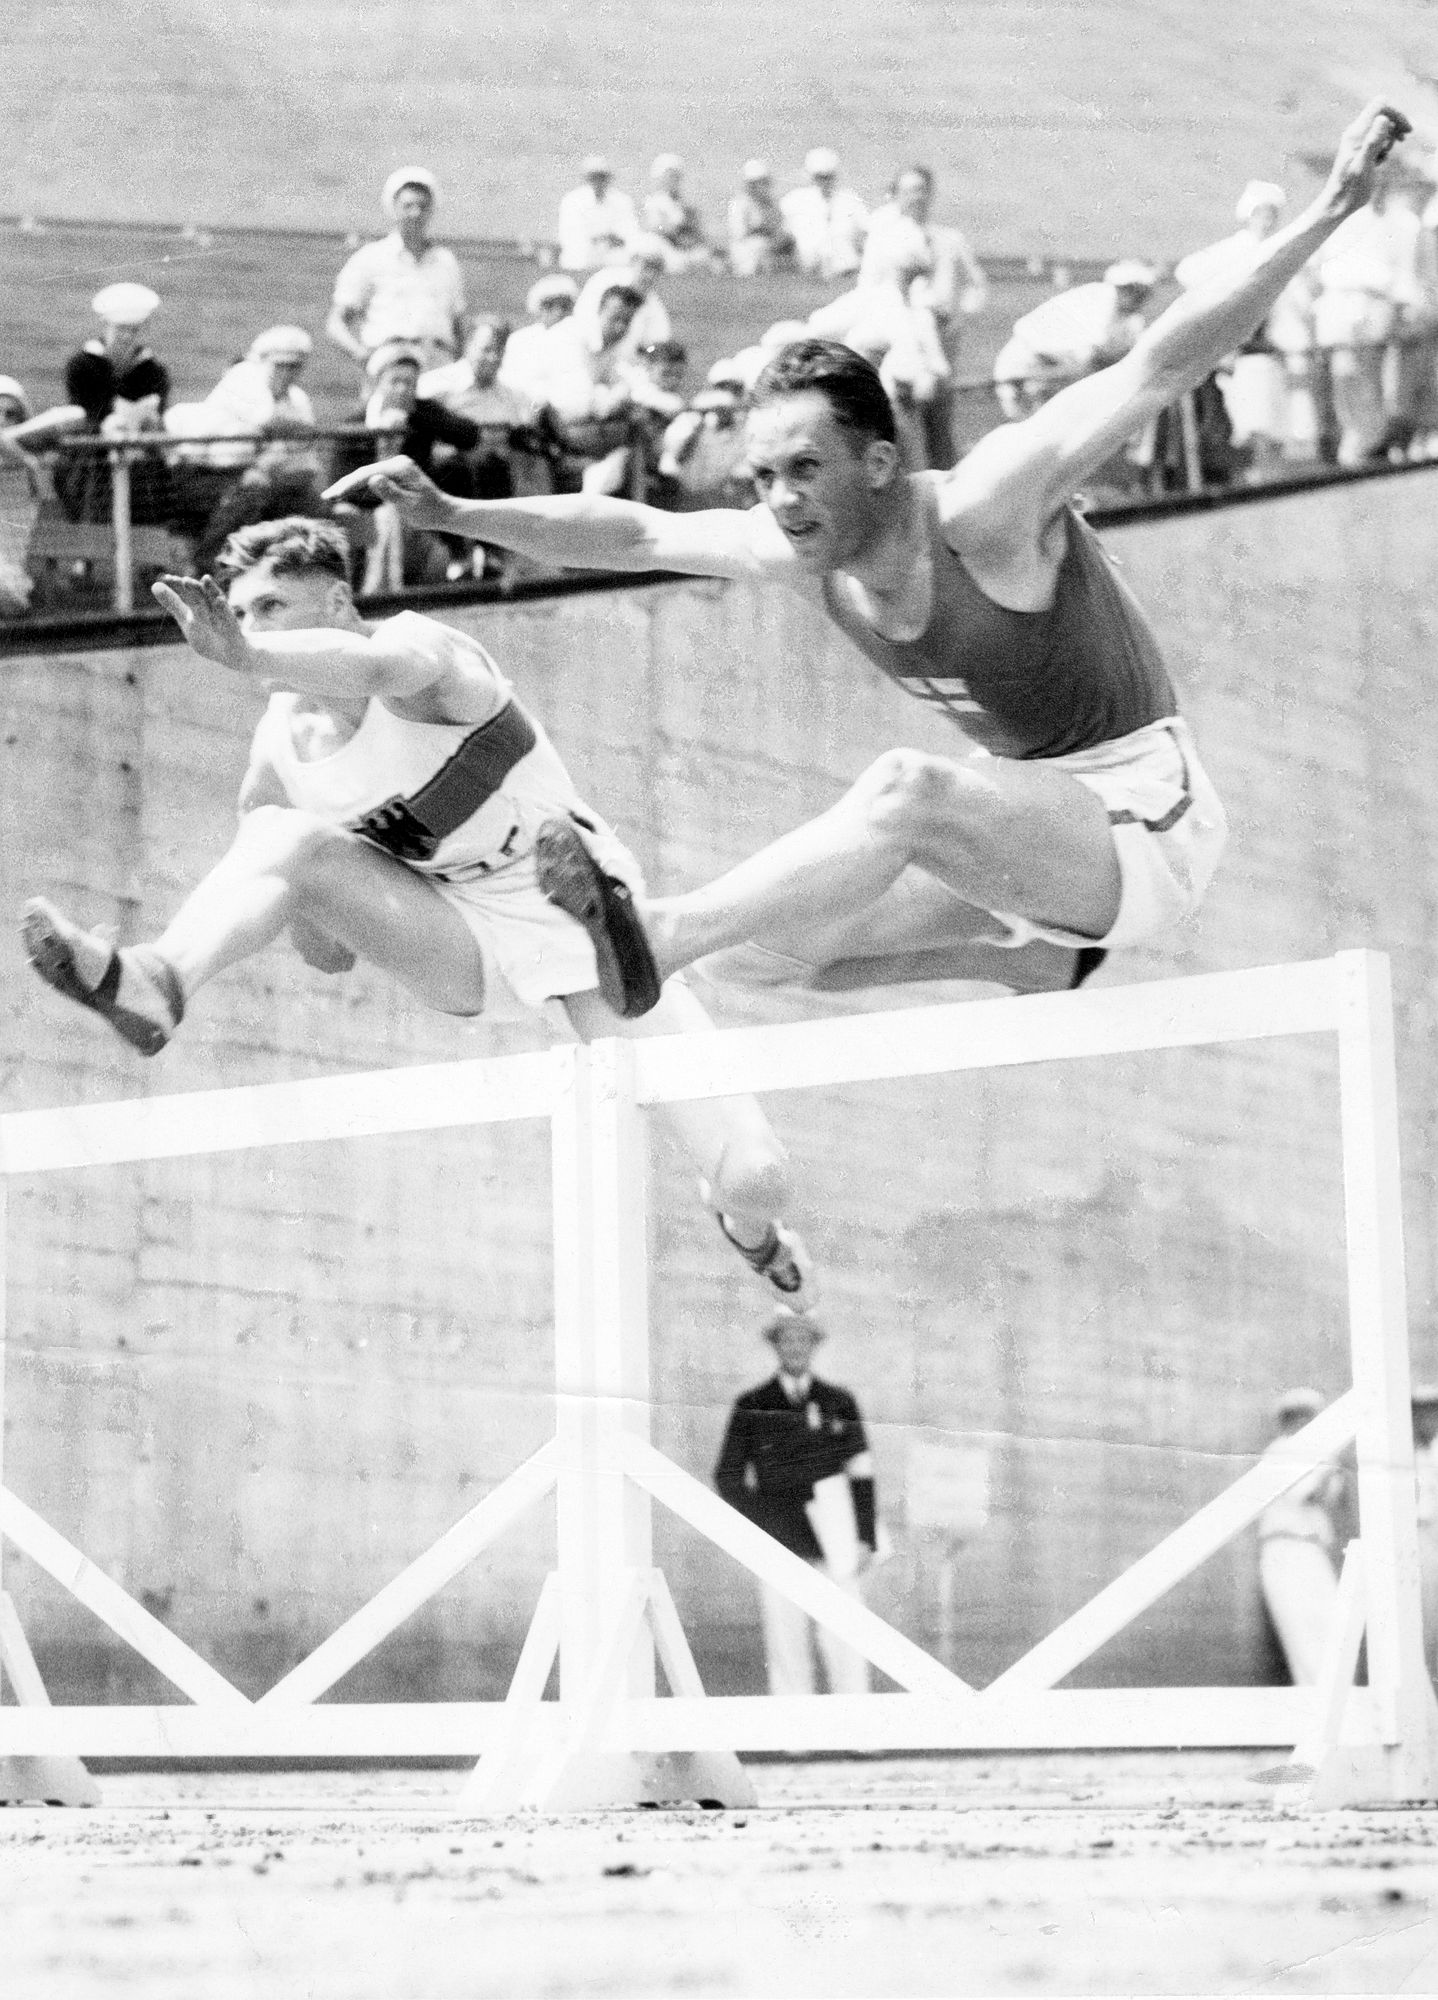 Akilles Järvisen parhaita lajeja Los Angelesin olympiakisoissa oli 110 metrin aitajuoksu. © Suomen Urheilumuseo